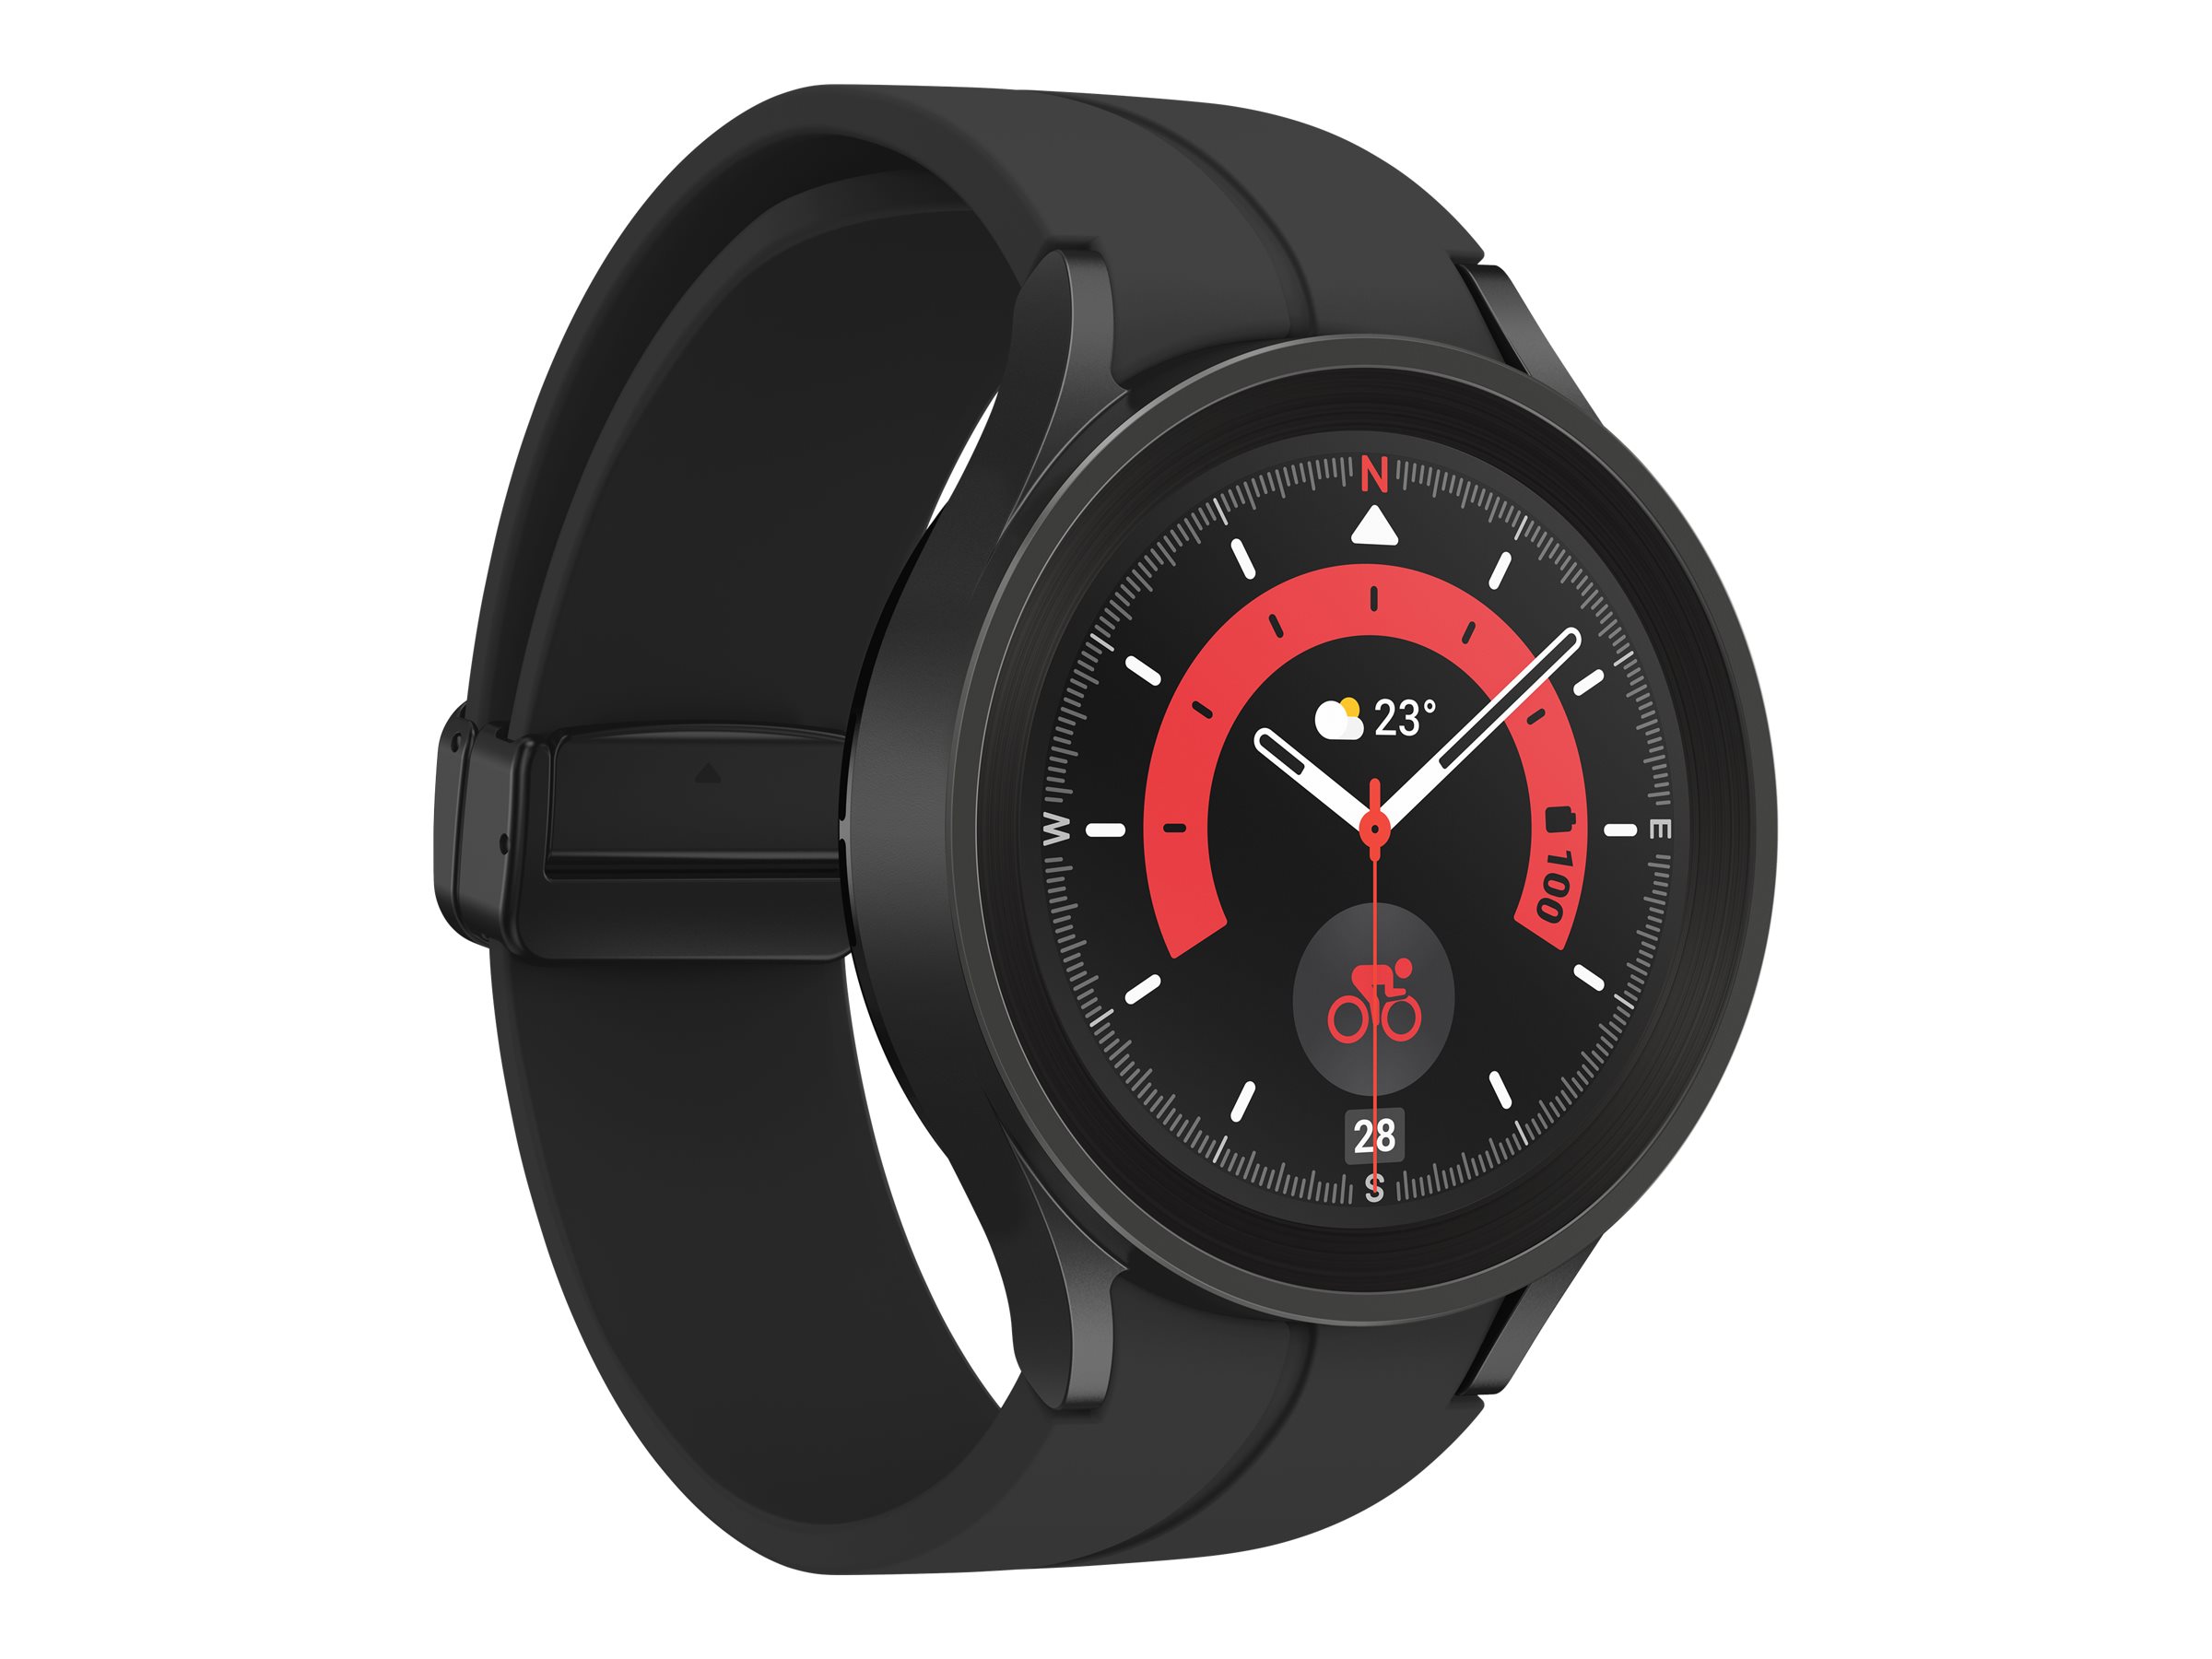 Samsung Galaxy Watch5 Pro - 45 mm - titane noir - montre intelligente avec bande sport - affichage 1.4" - 16 Go - NFC, Wi-Fi, Bluetooth - 46.5 g - SM-R920NZKAXEF - Montres intelligentes